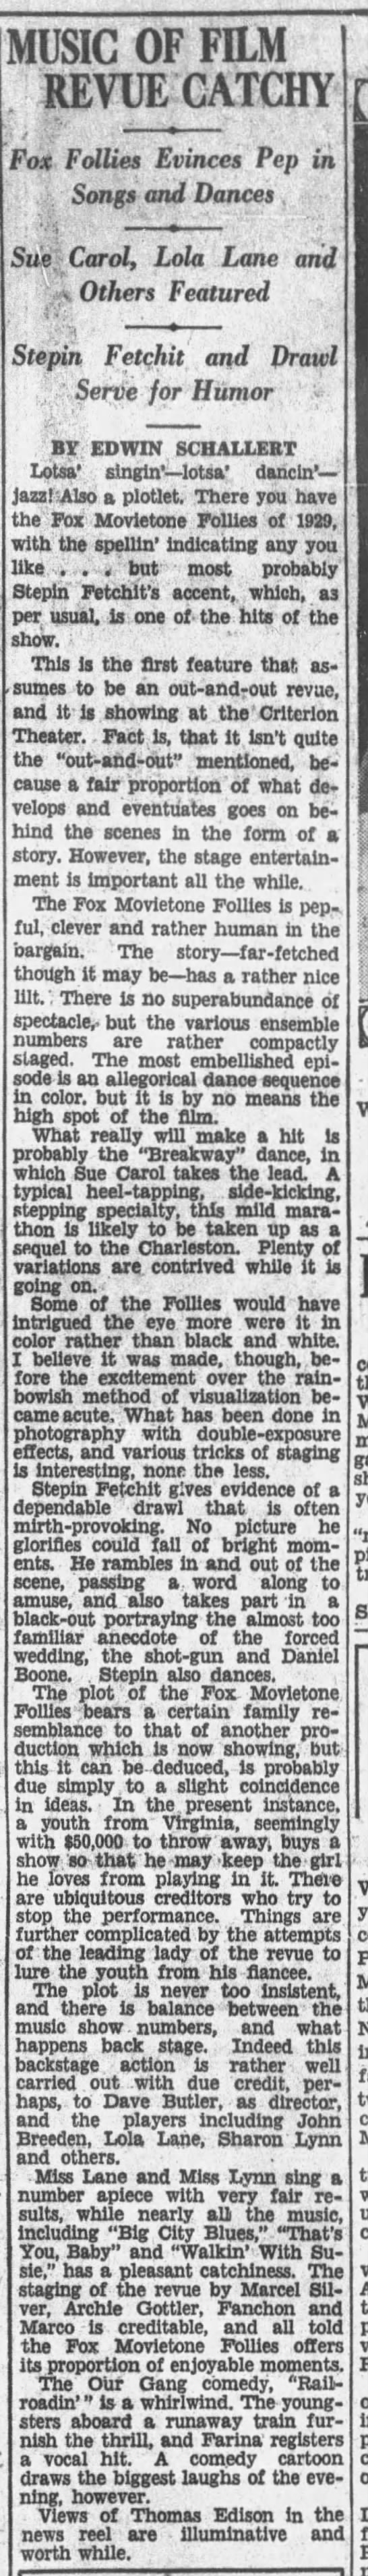 Fox Movietone Follies of 1929* - 